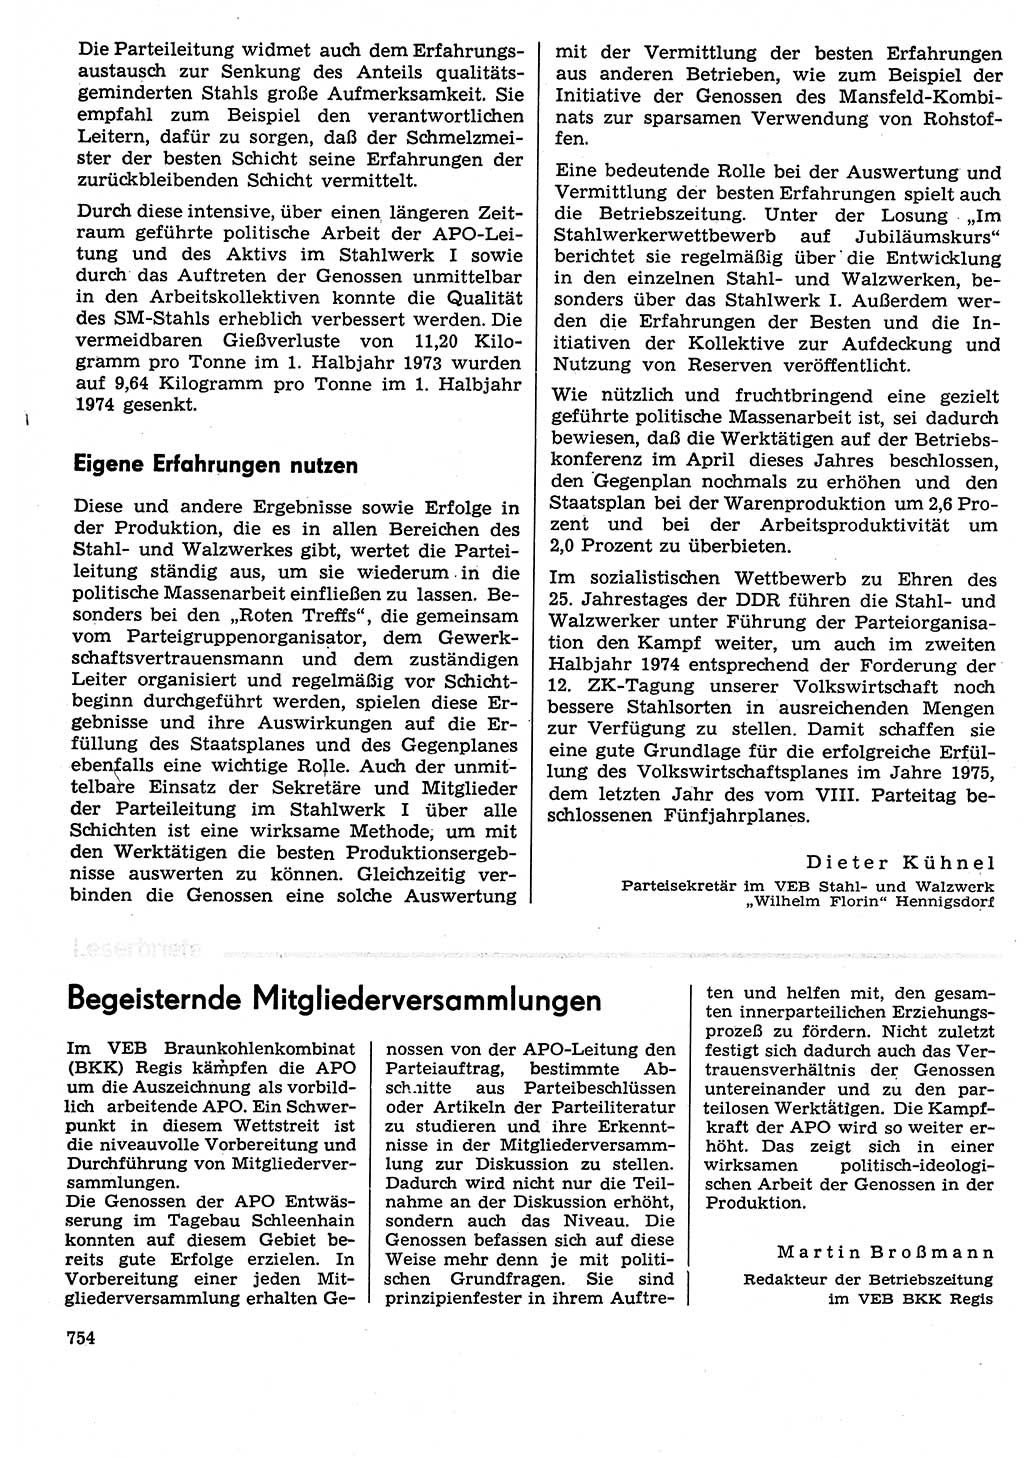 Neuer Weg (NW), Organ des Zentralkomitees (ZK) der SED (Sozialistische Einheitspartei Deutschlands) für Fragen des Parteilebens, 29. Jahrgang [Deutsche Demokratische Republik (DDR)] 1974, Seite 754 (NW ZK SED DDR 1974, S. 754)